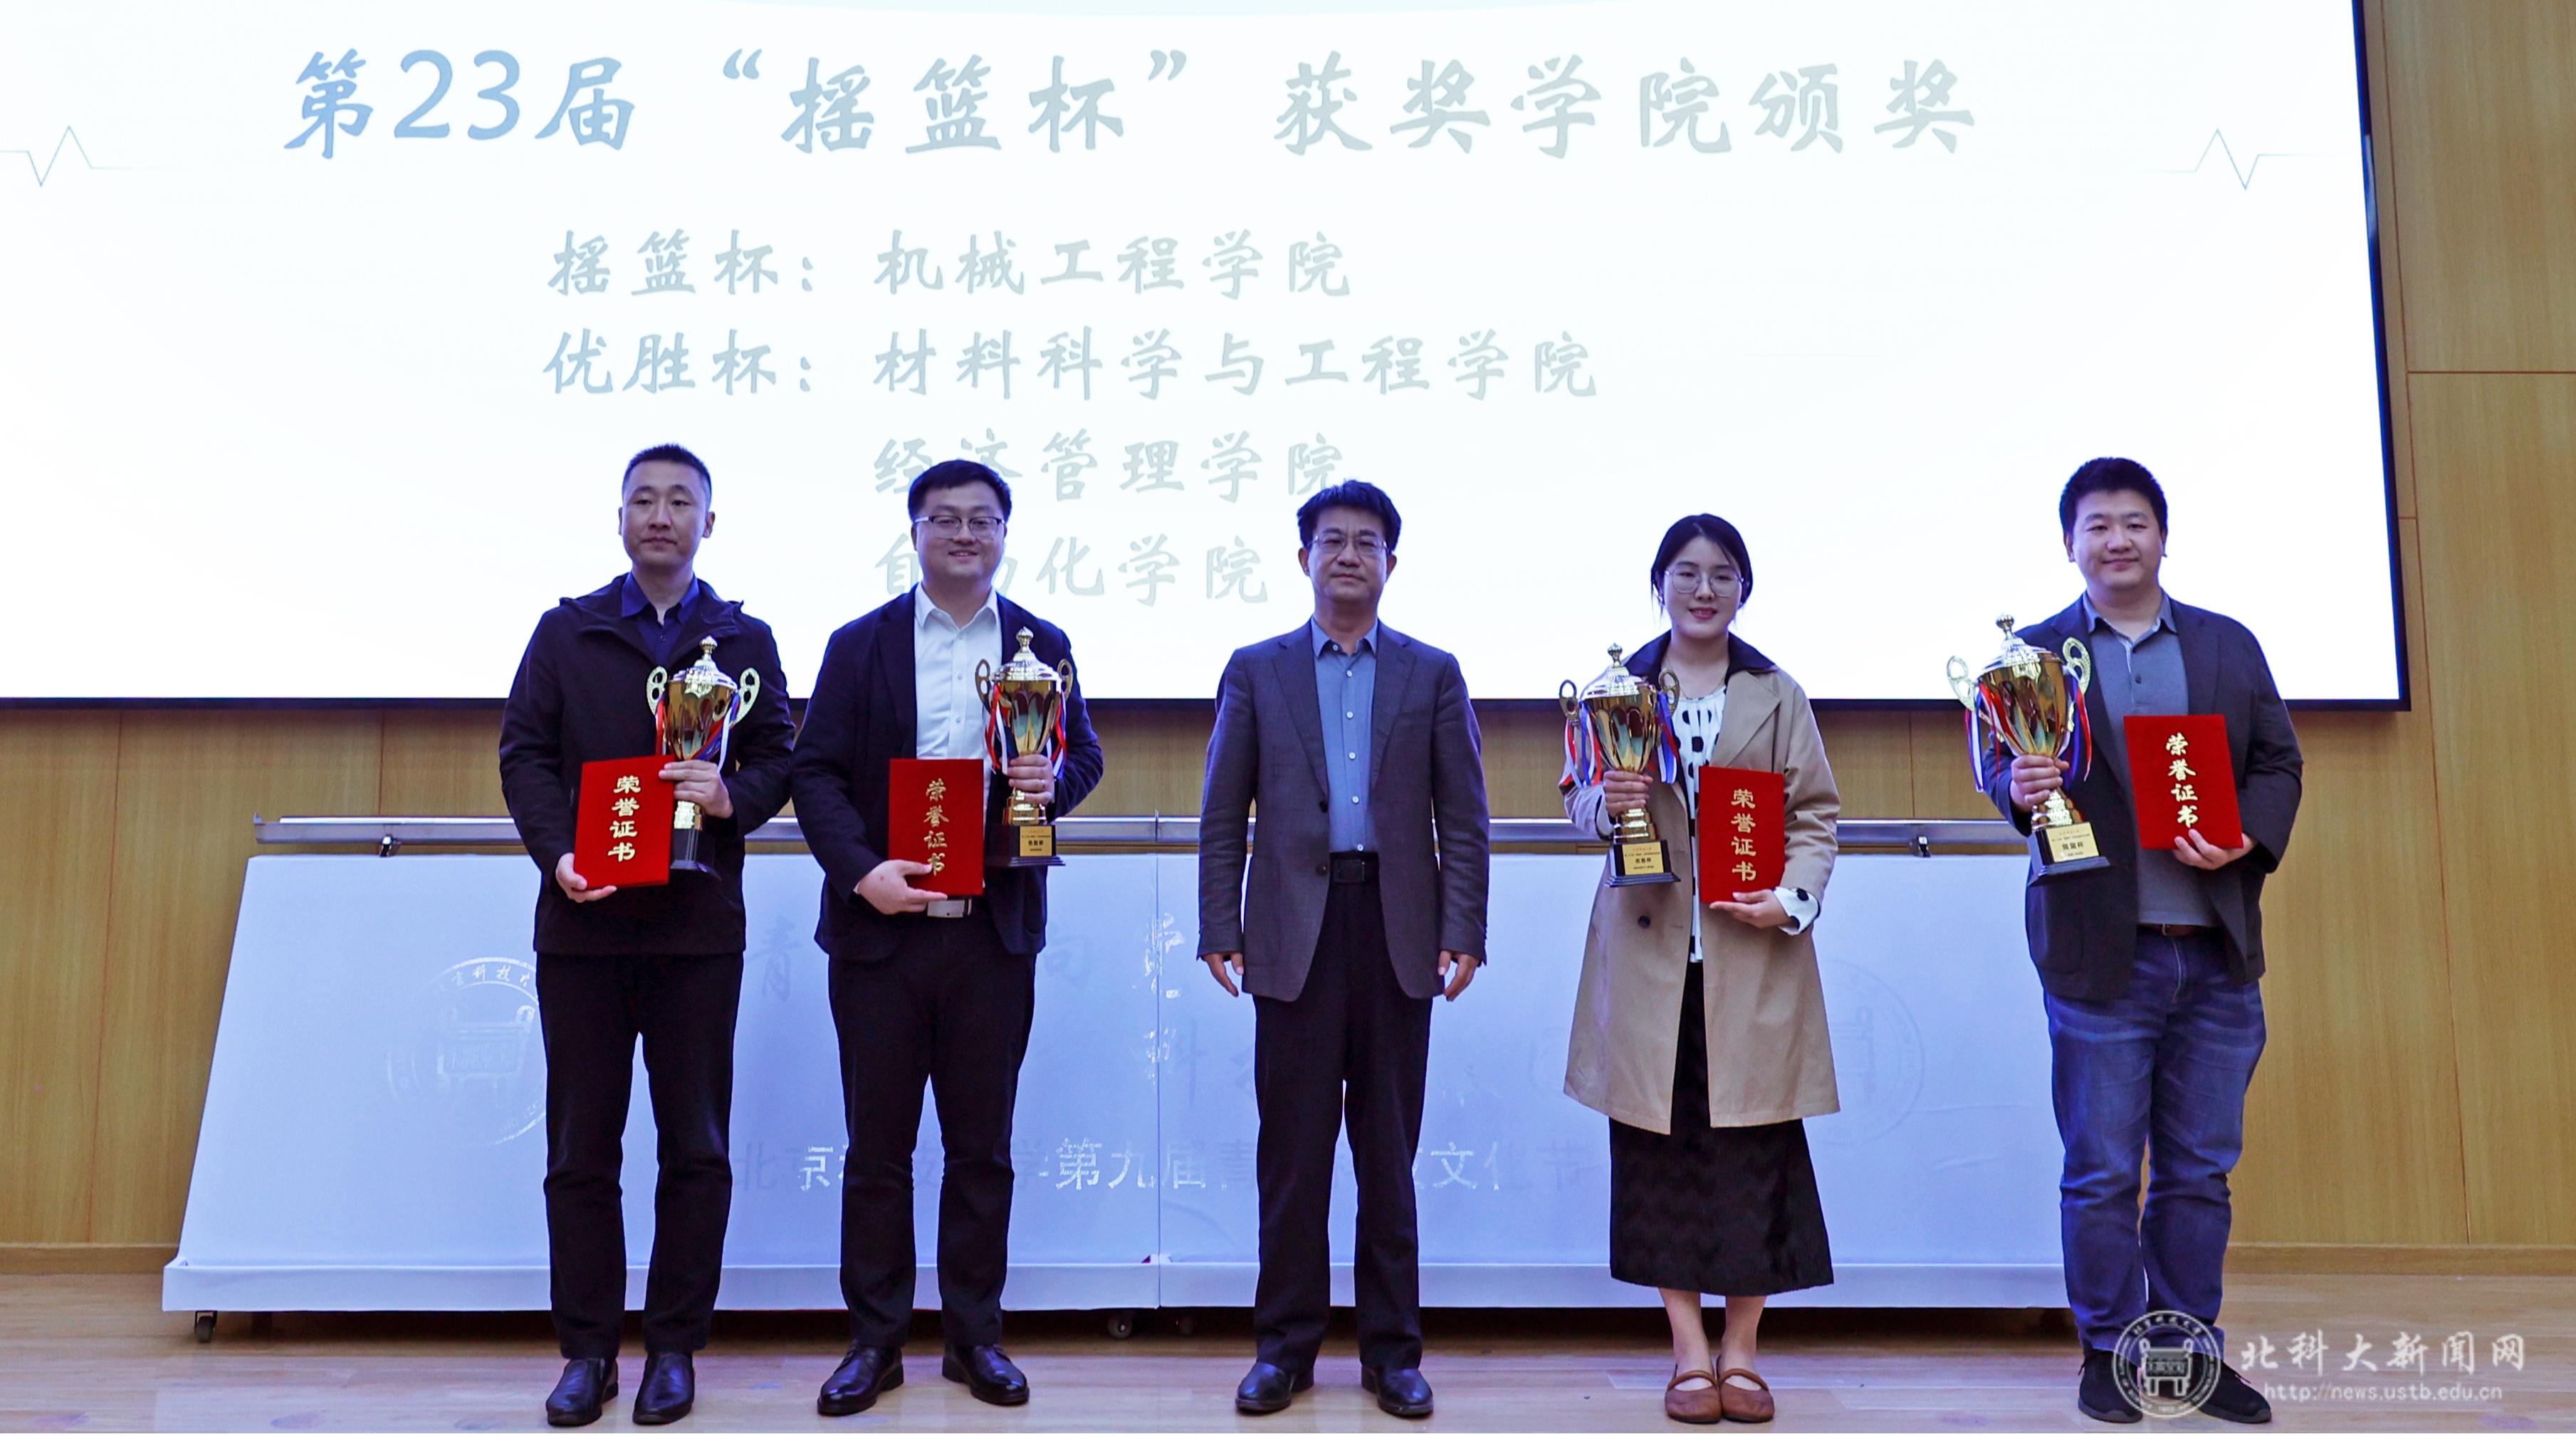 图片2：北京科大科技园总经理王斌为第23届“摇篮杯”获奖学院颁奖.jpg